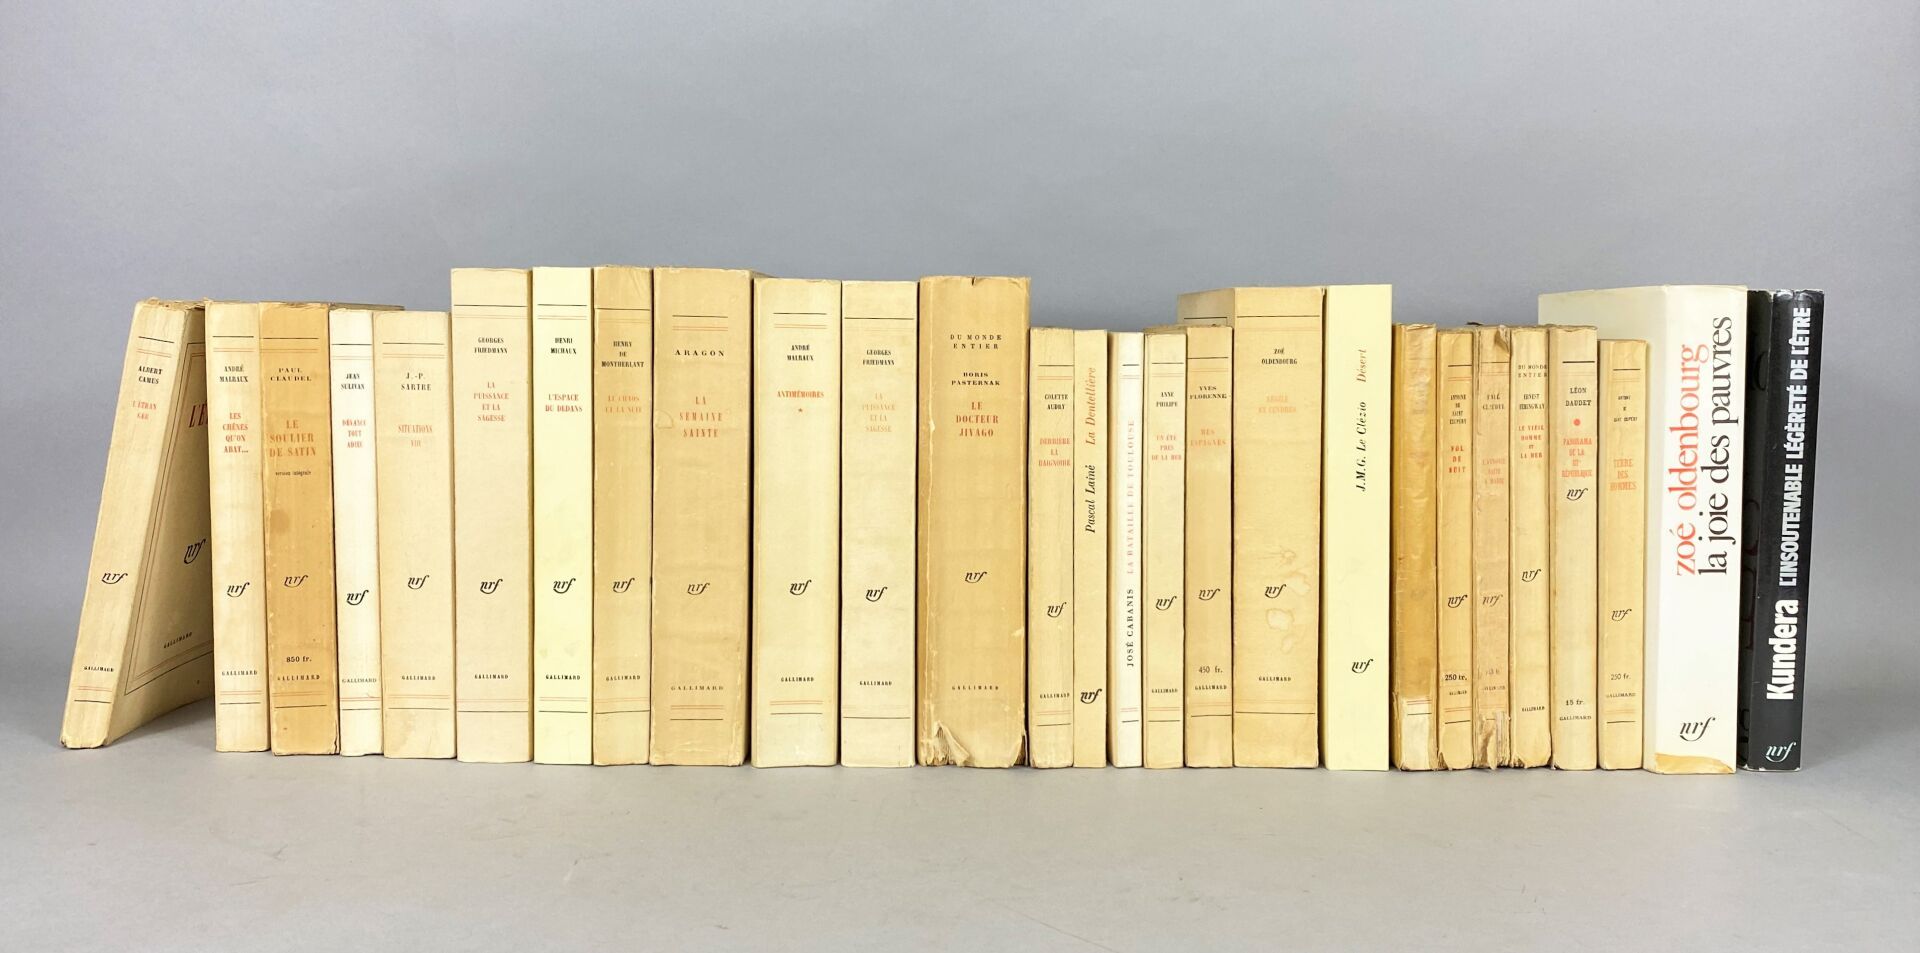 Null NRF - Gallimard。

本拍品包含二十七本NRF平装书。

包括阿尔贝-加缪、安德烈-马尔罗、保罗-克劳岱尔、让-苏利文、让-保罗-萨特、&hellip;